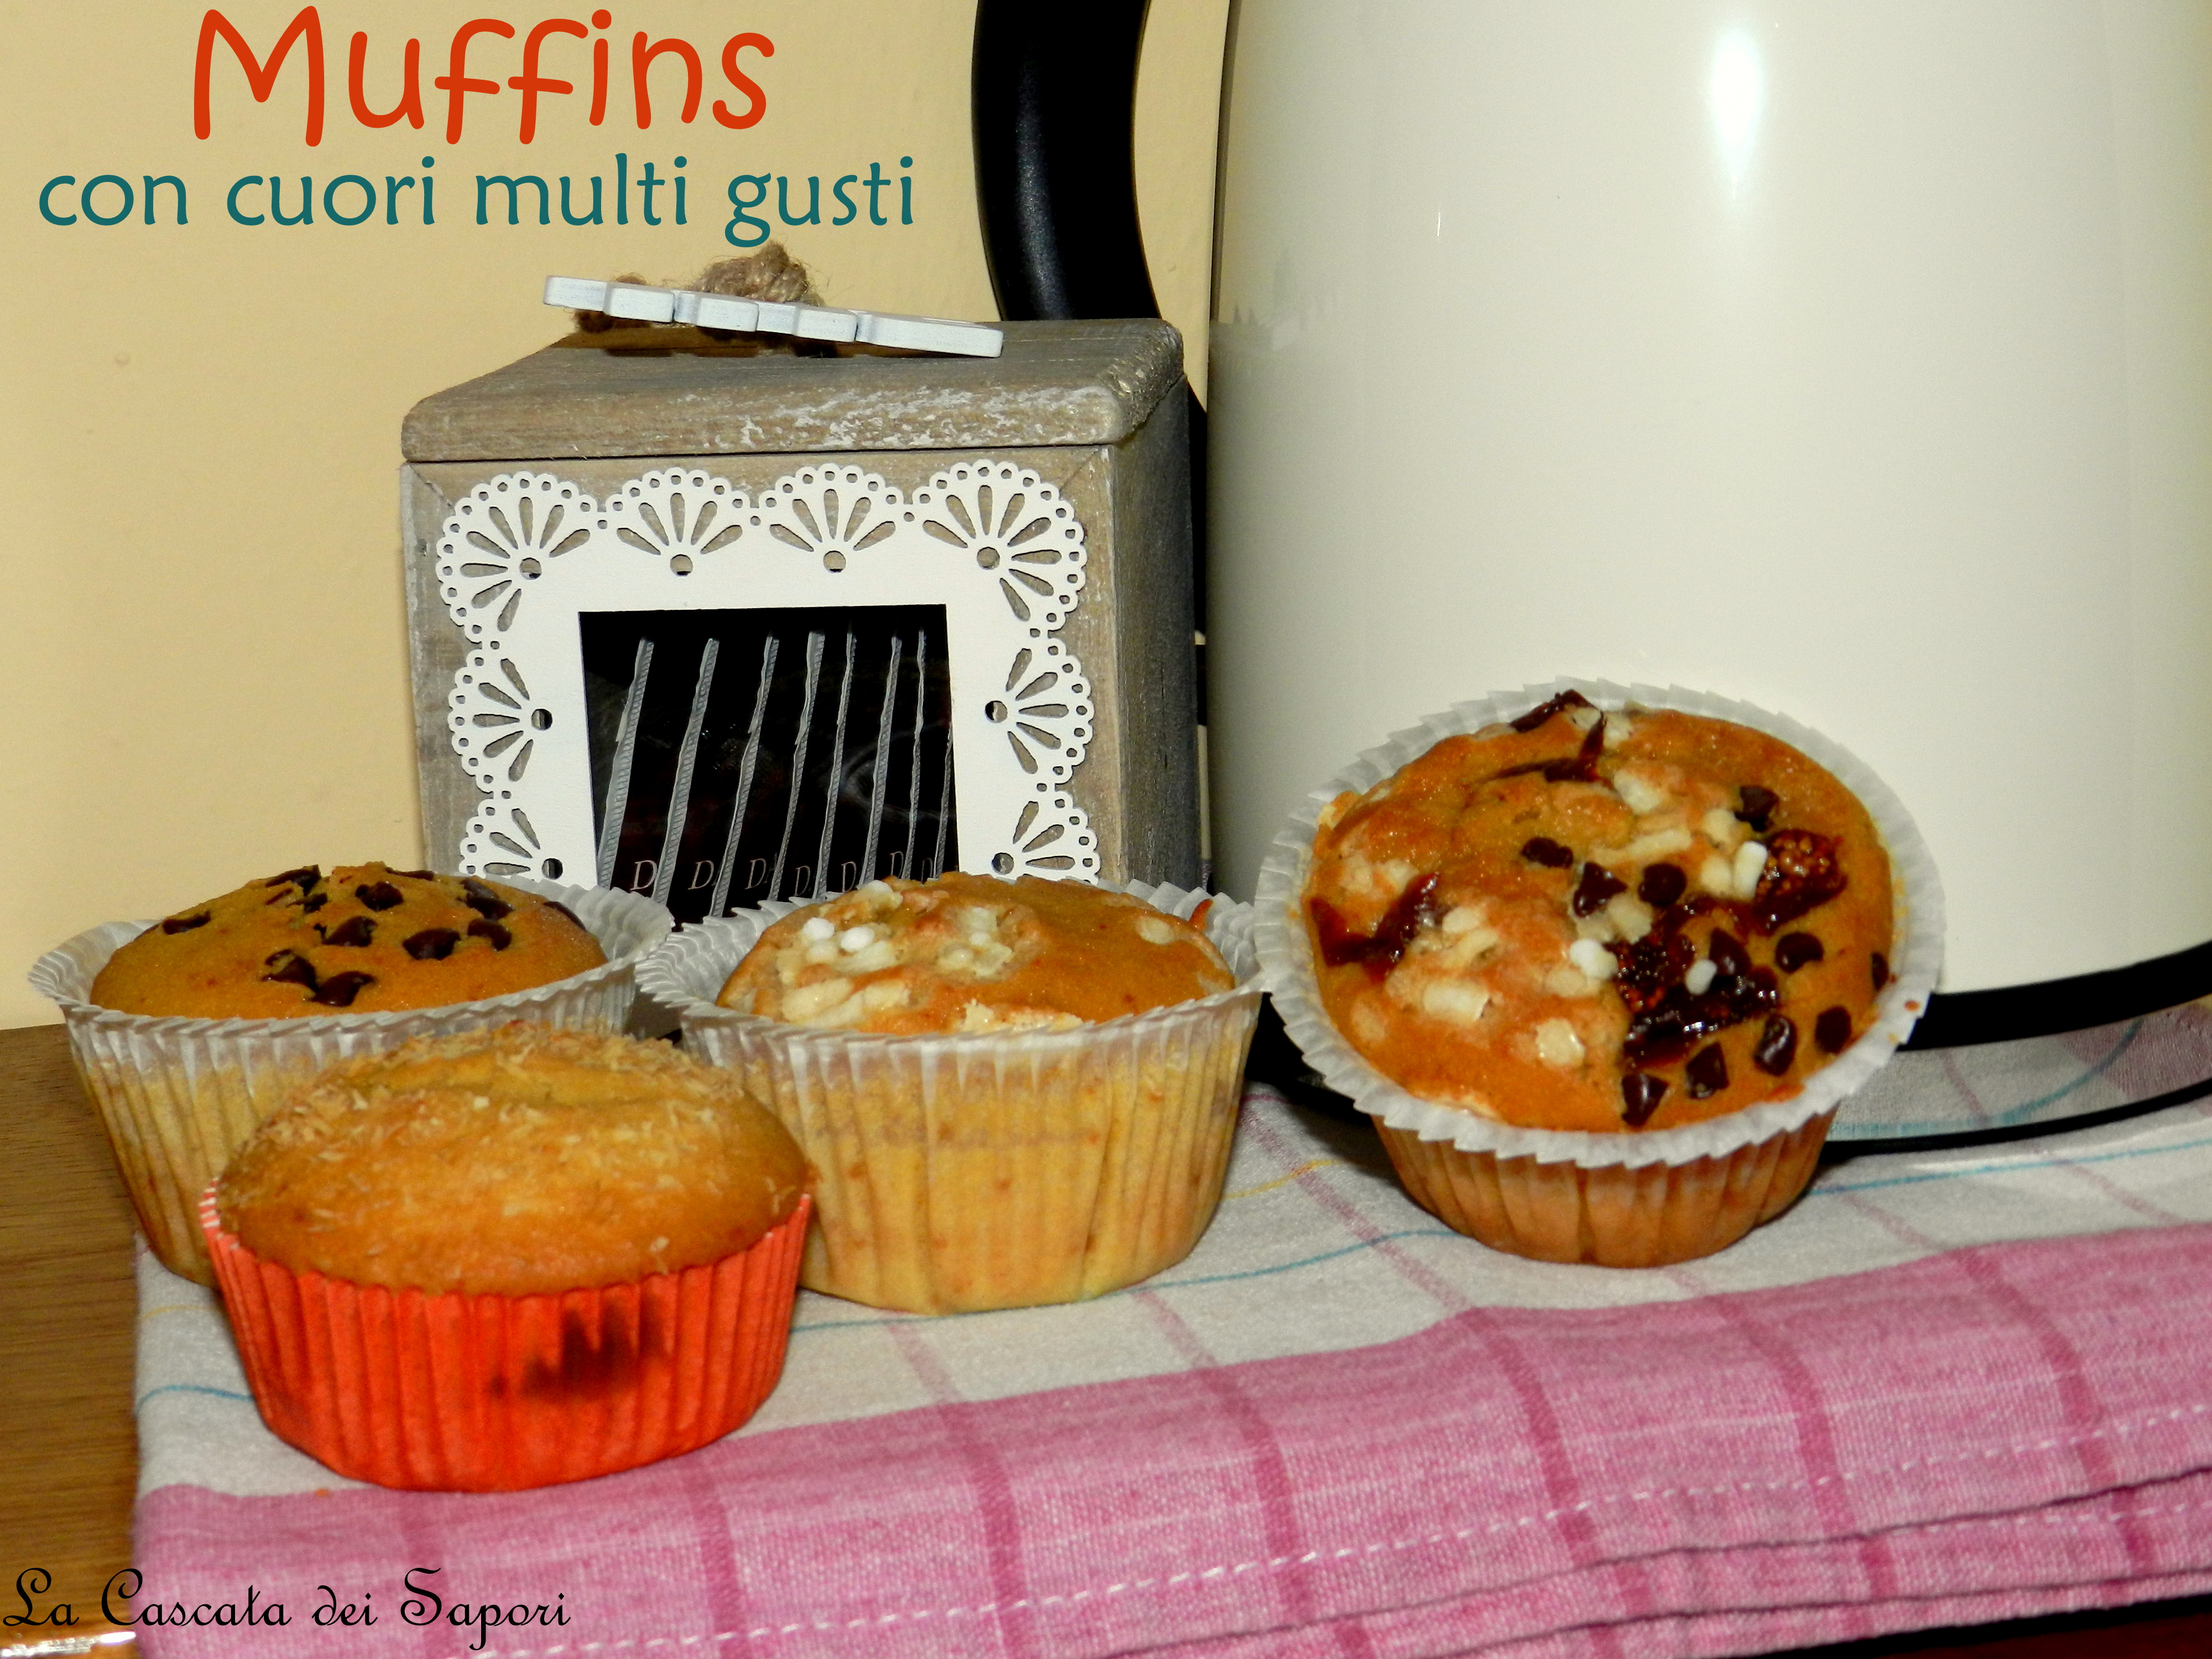 Muffins con cuori multi gusti 2.0